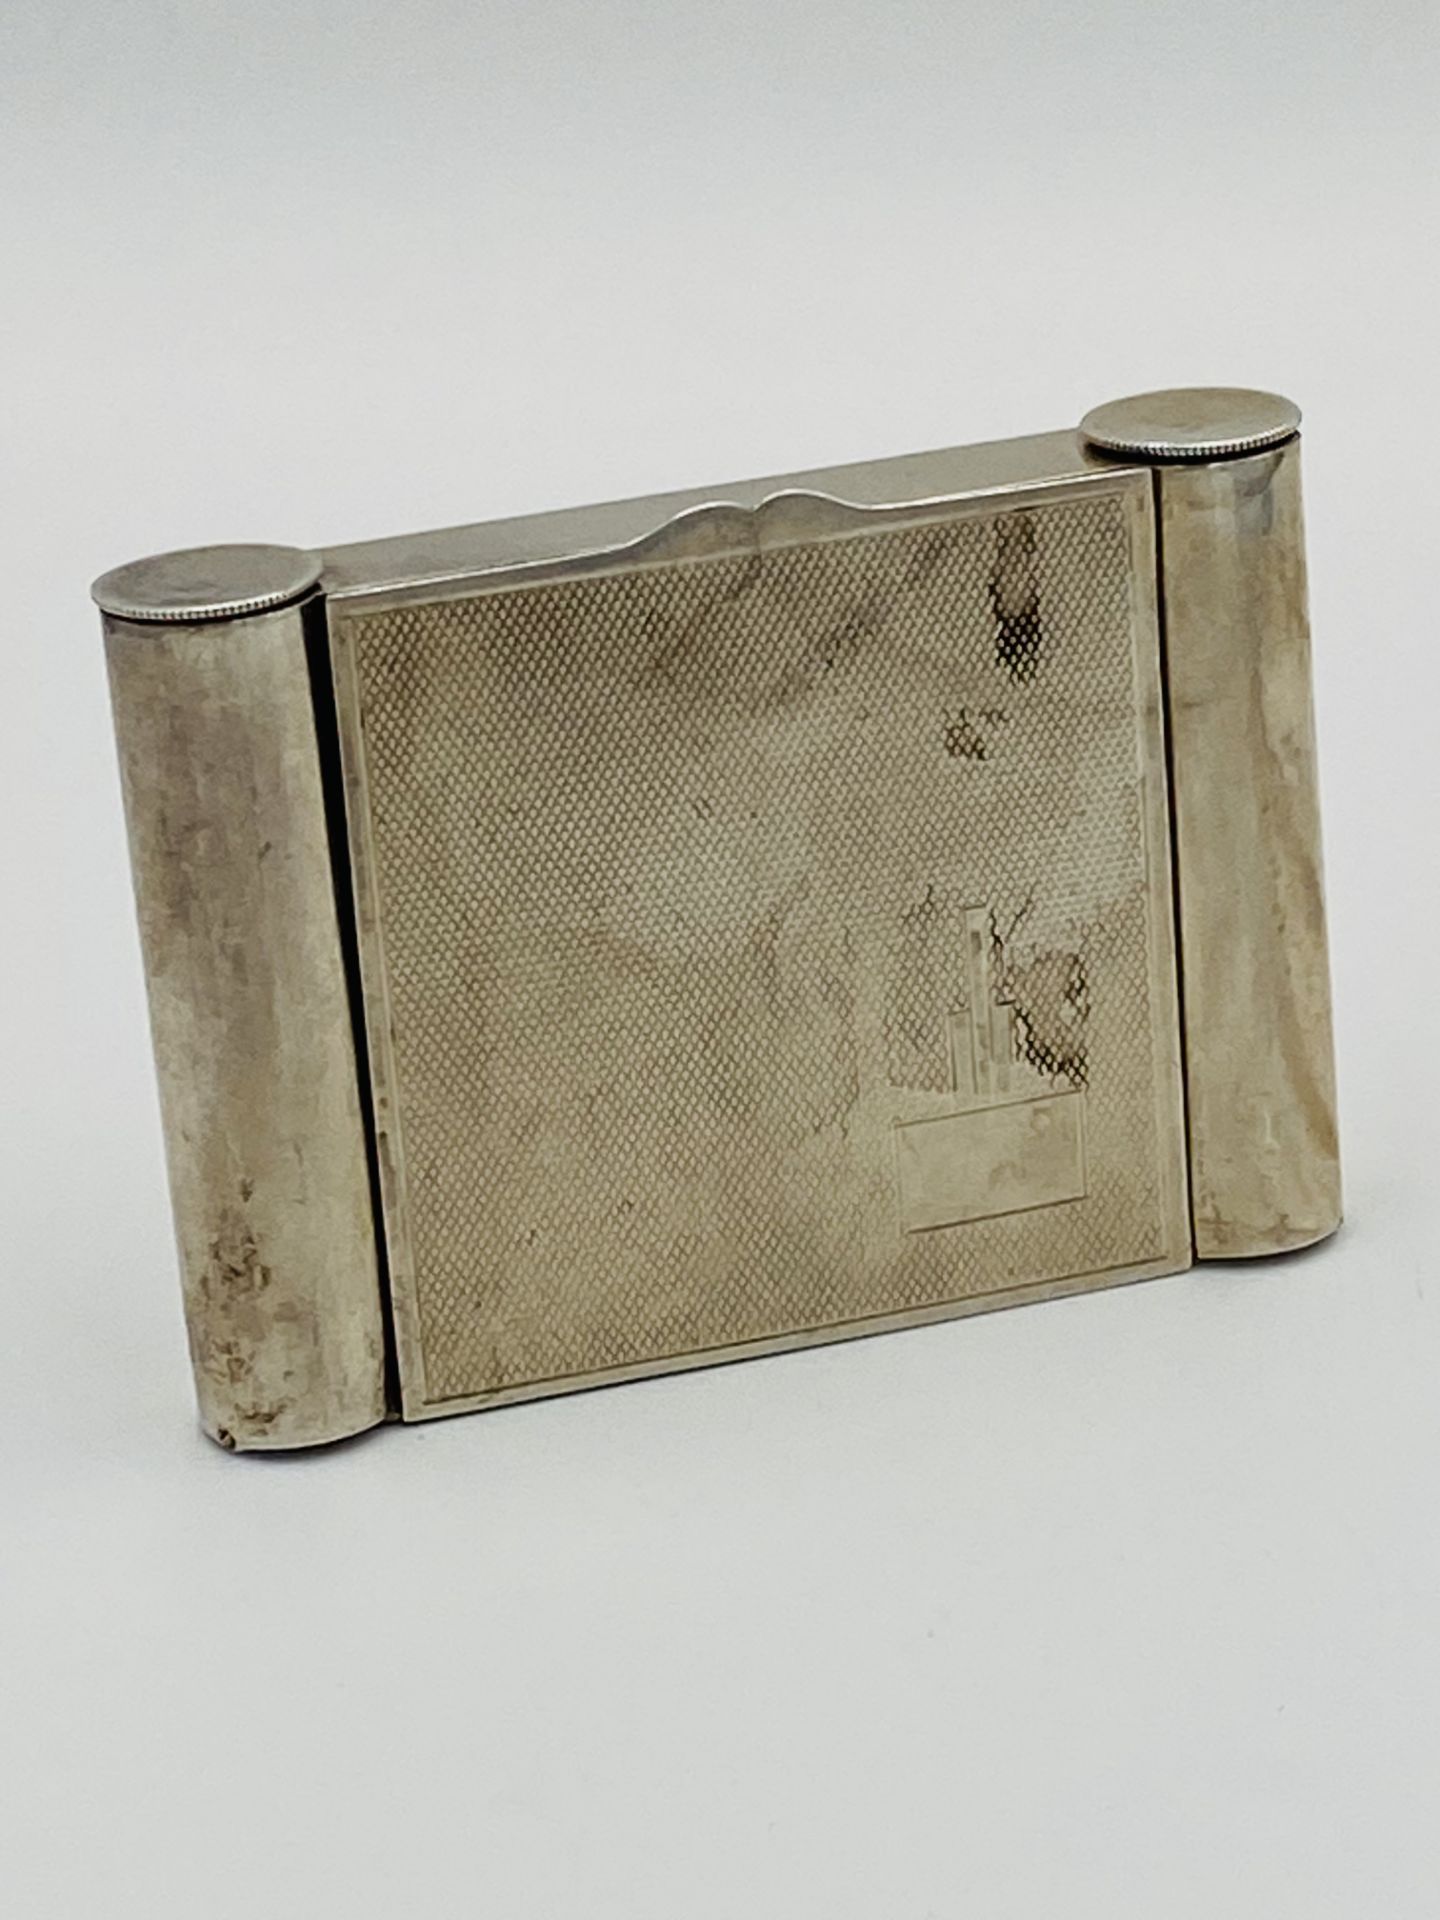 Silver case by Deakin & Francis, Birmingham 1934 - Image 4 of 5